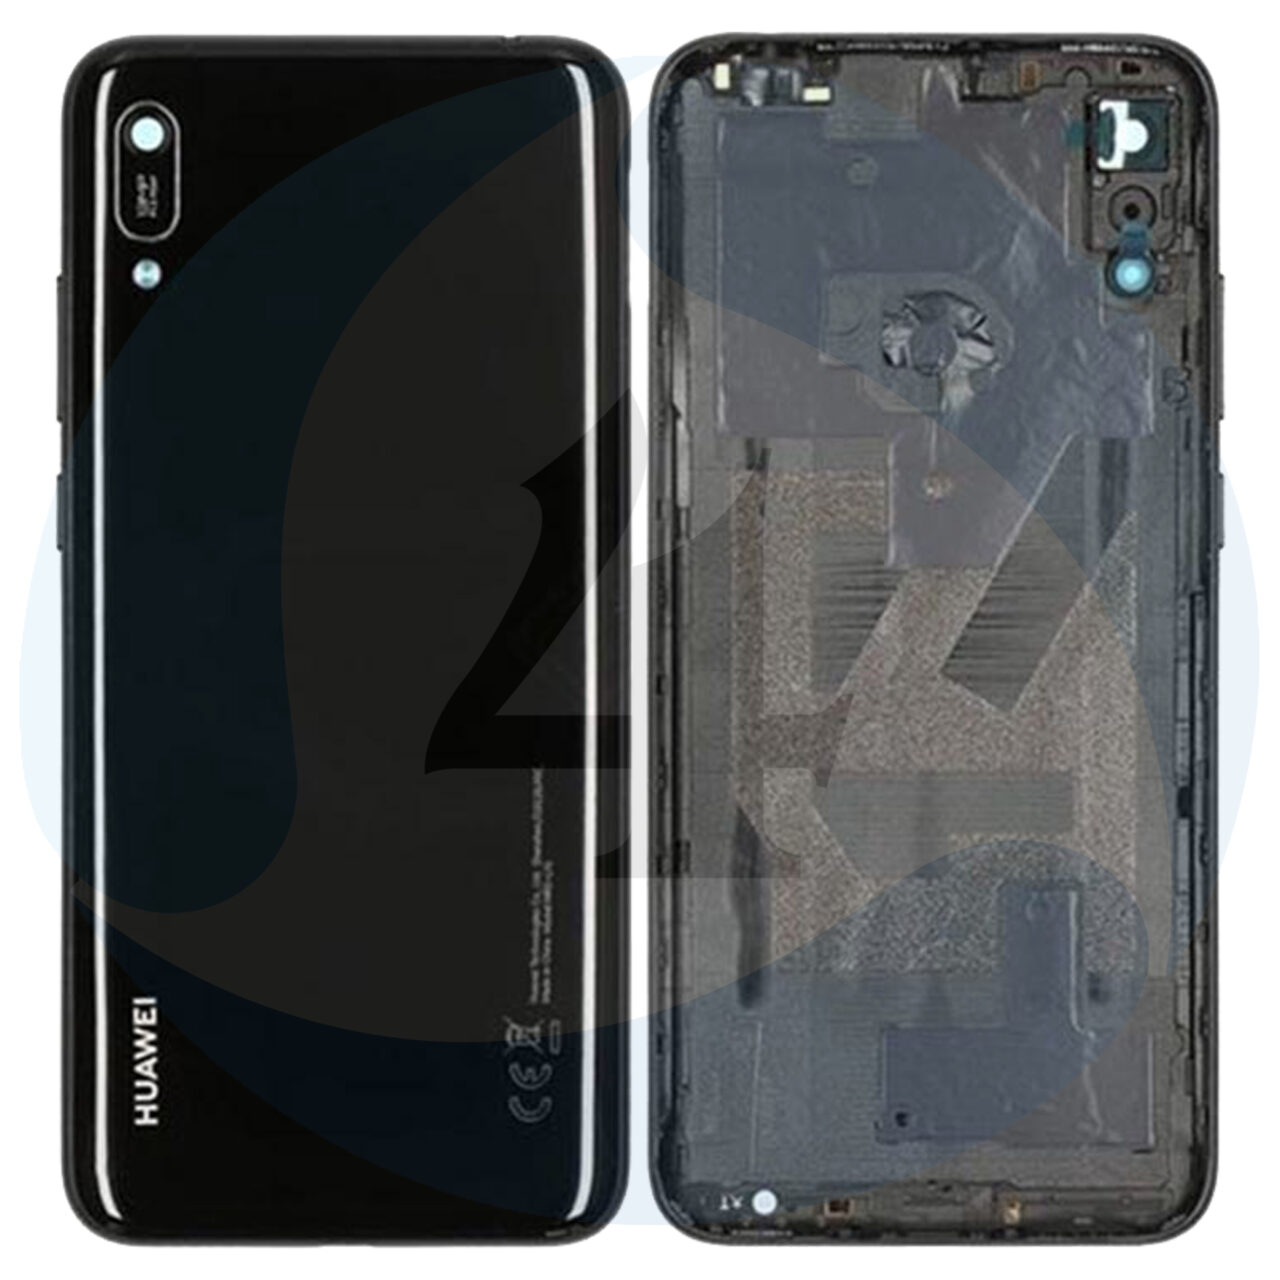 Huawei Y6 2019 Back Cover 02352 LYH Midnight Black